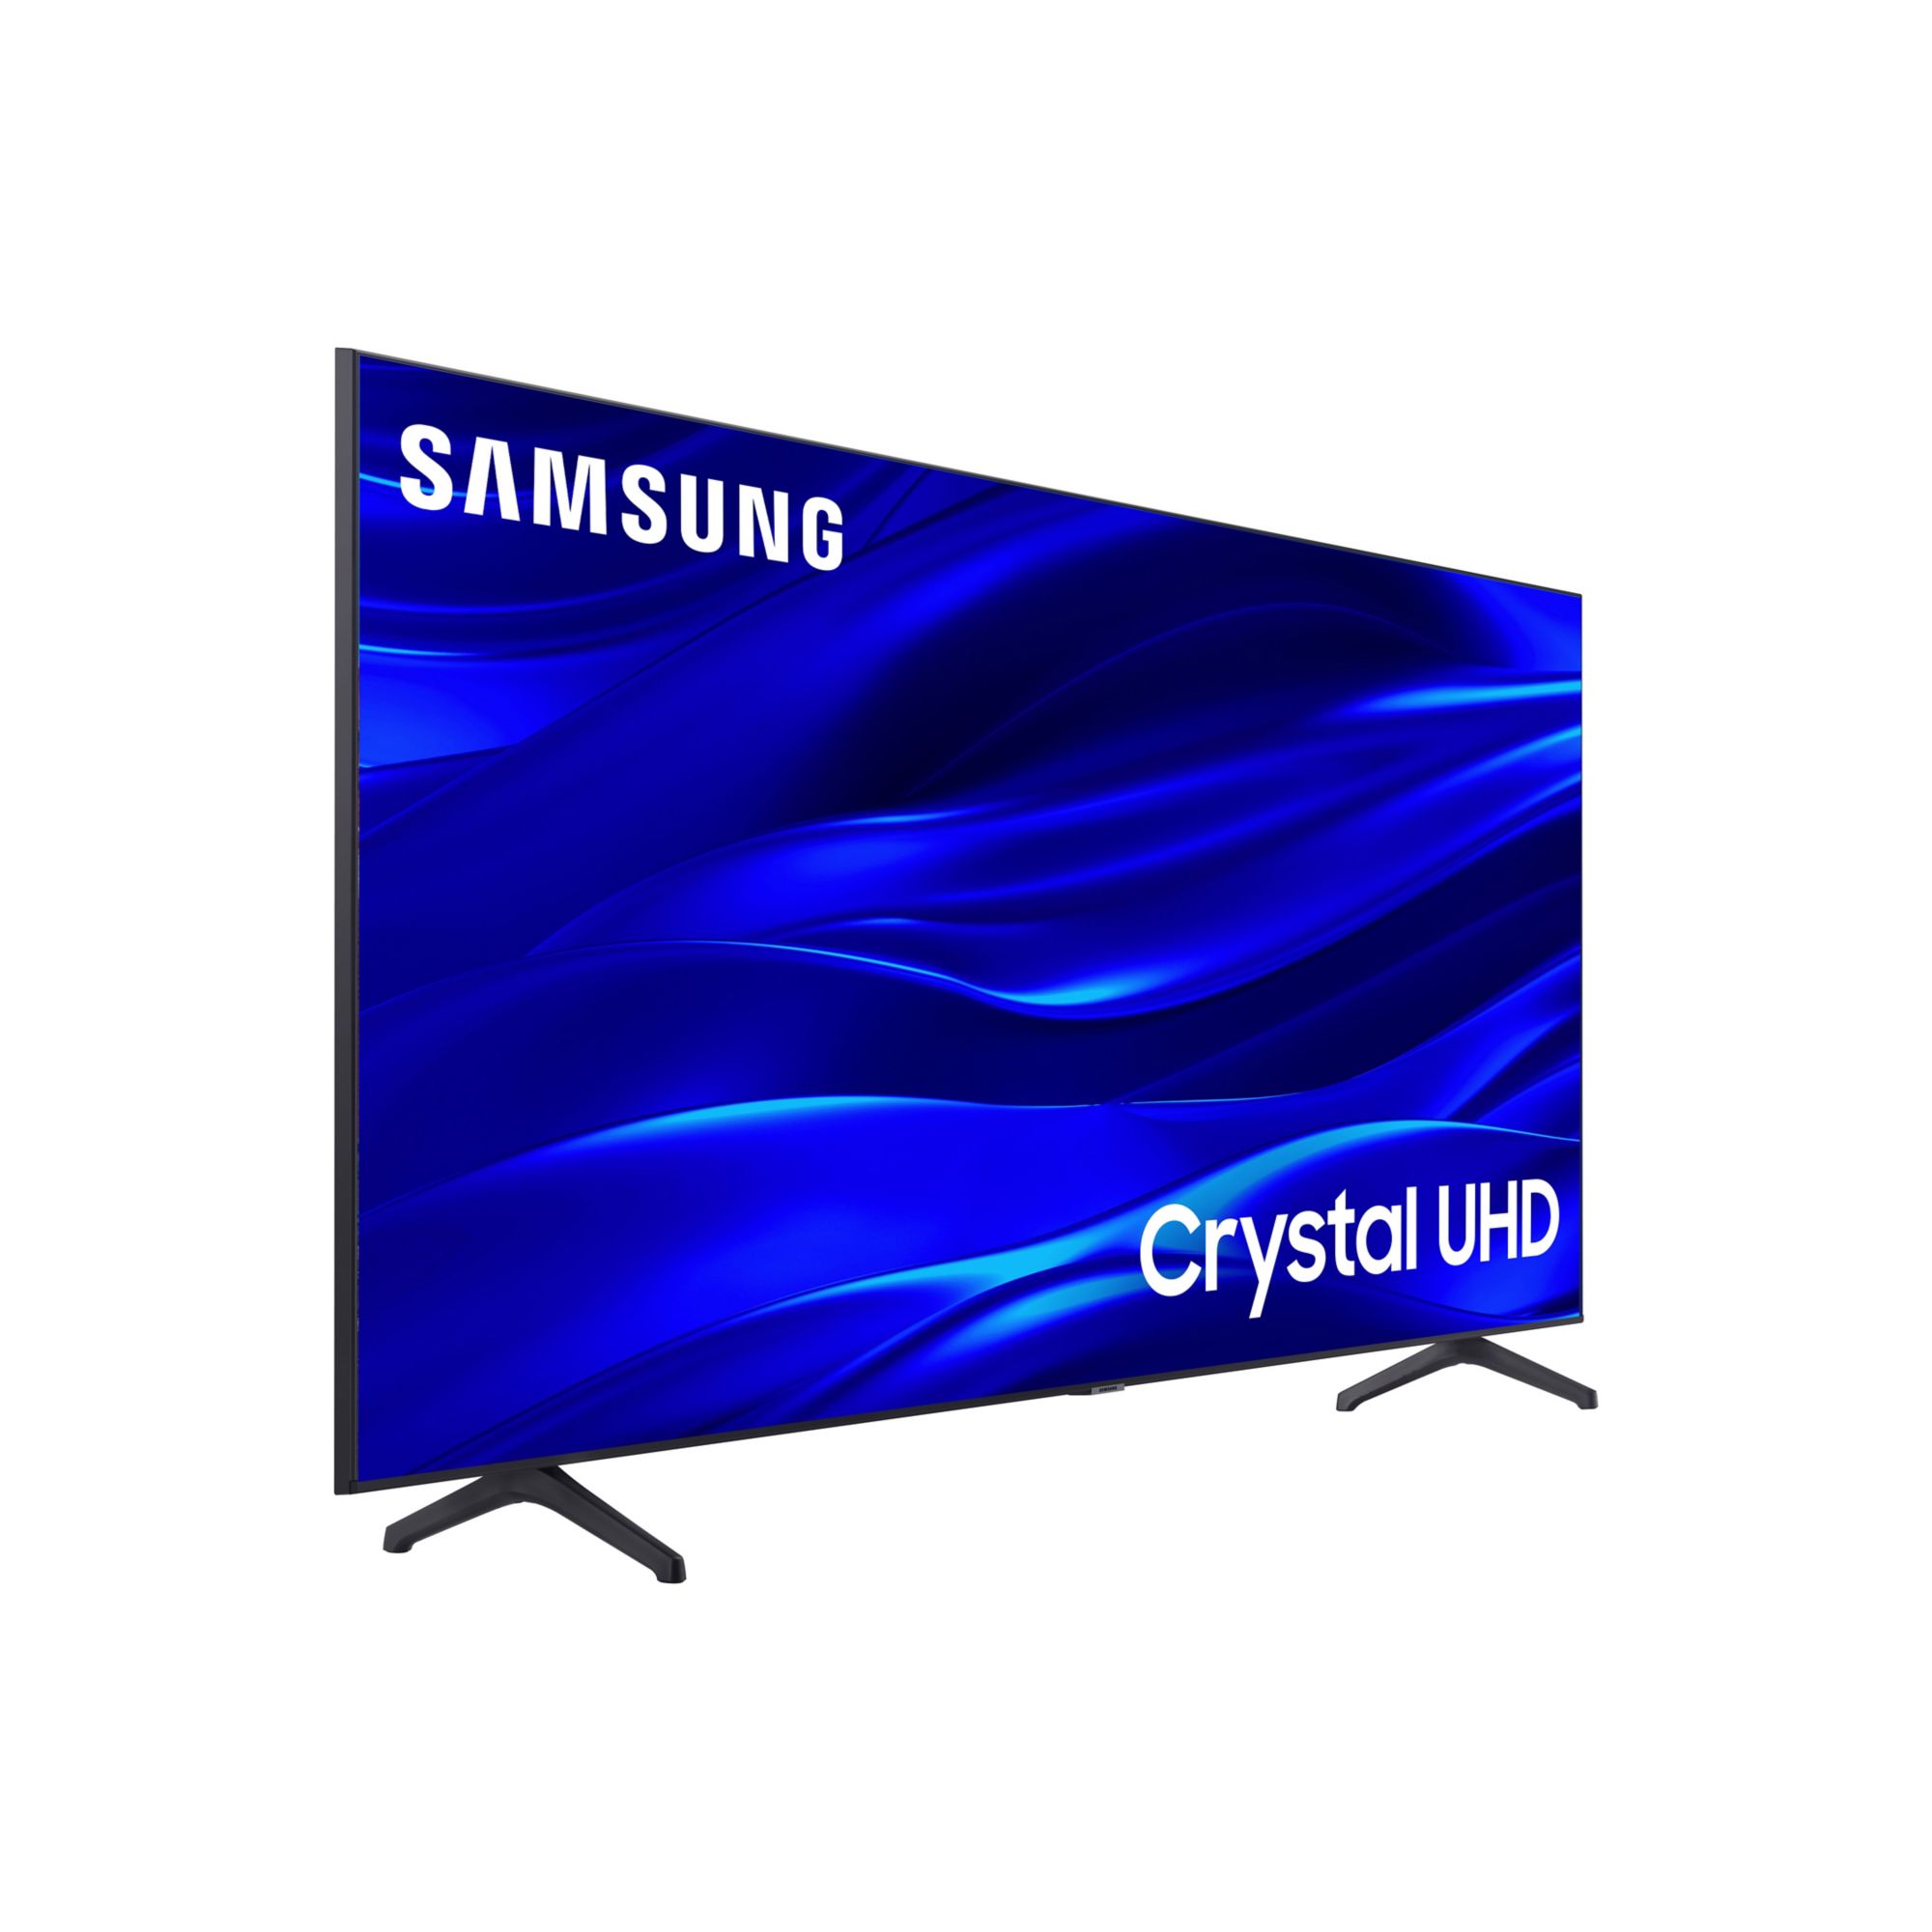 TV CU7000 Crystal UHD 43 pulgadas 2023 - {Price}